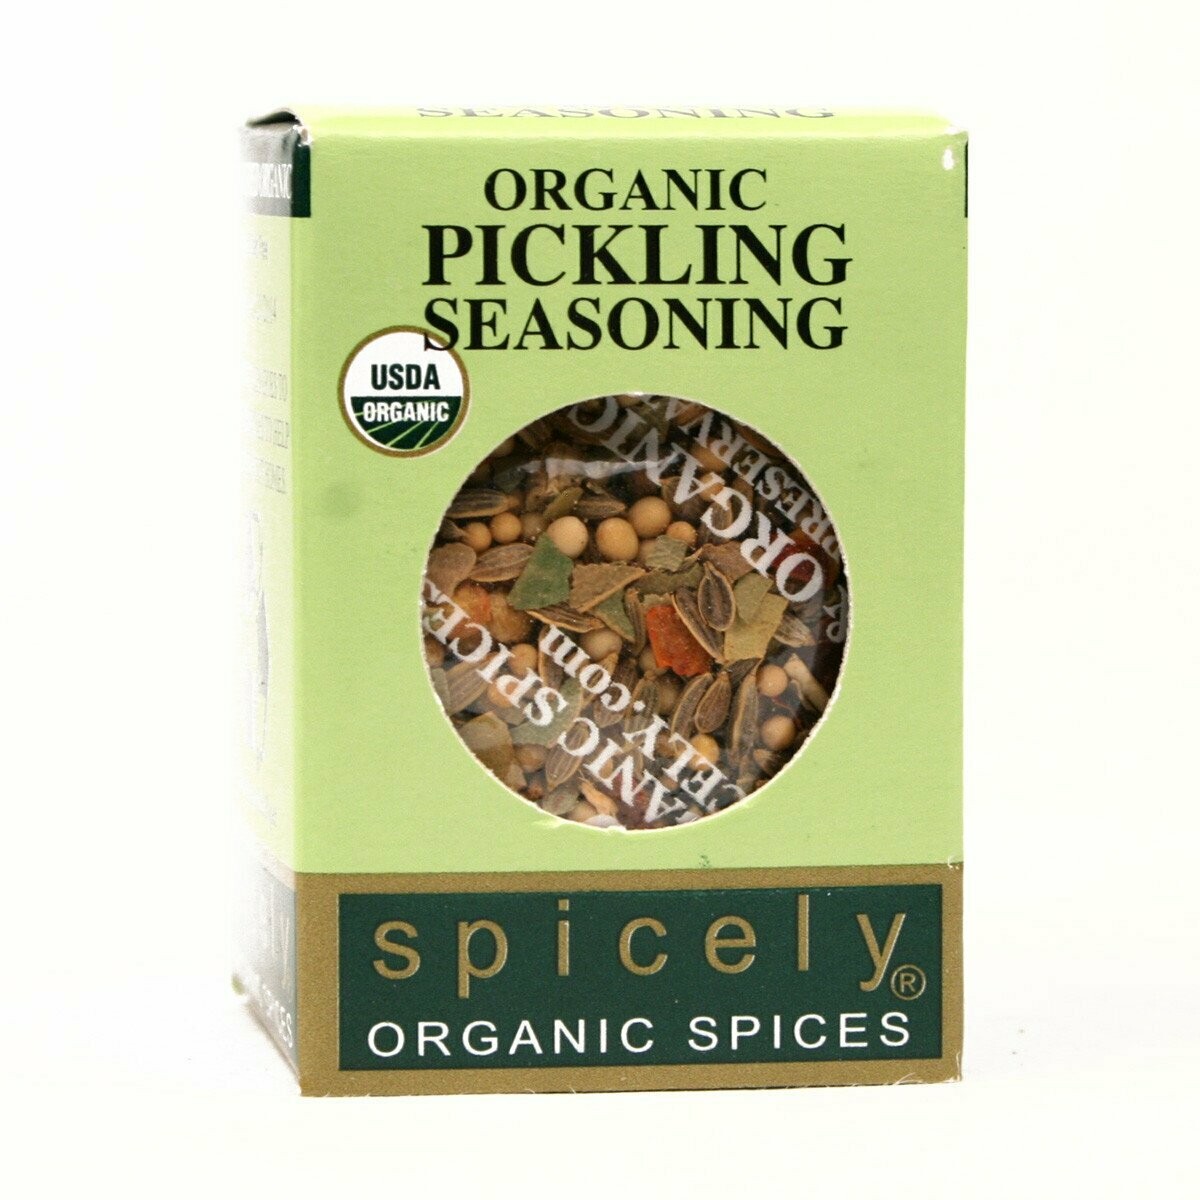 Organic Pickling Seasoning